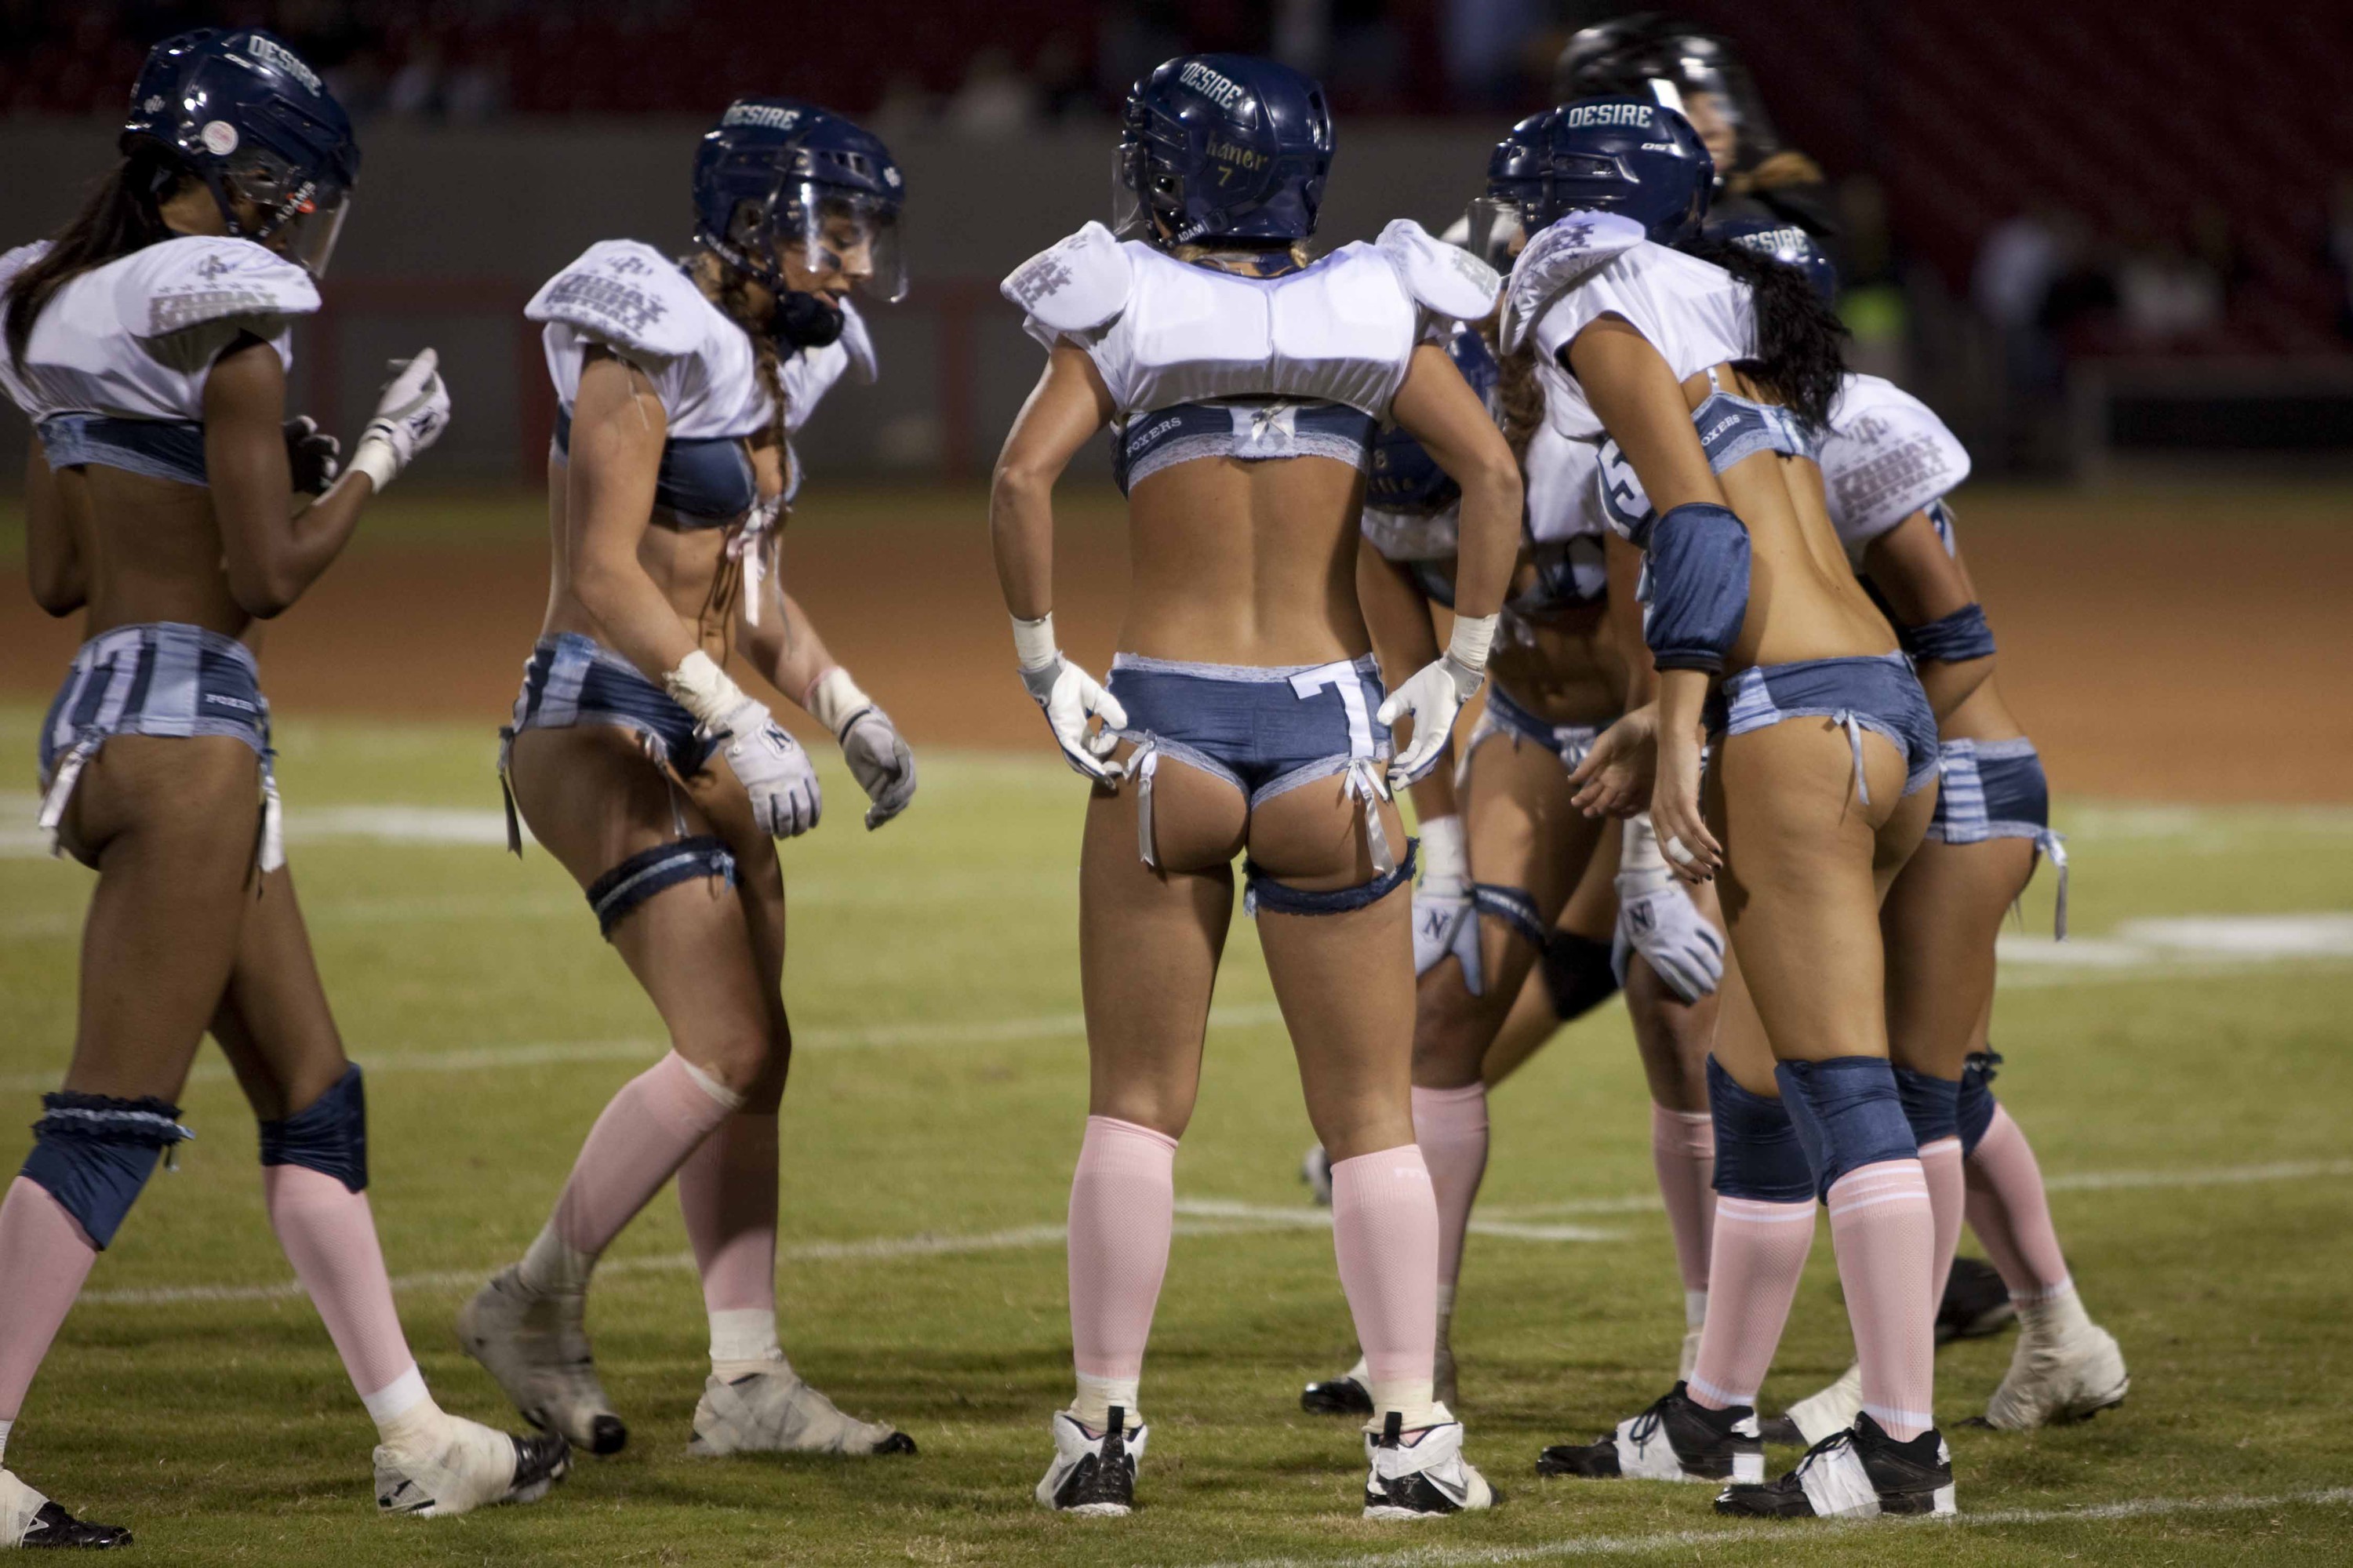 Американский футбол с голыми женщинами (79 фото)